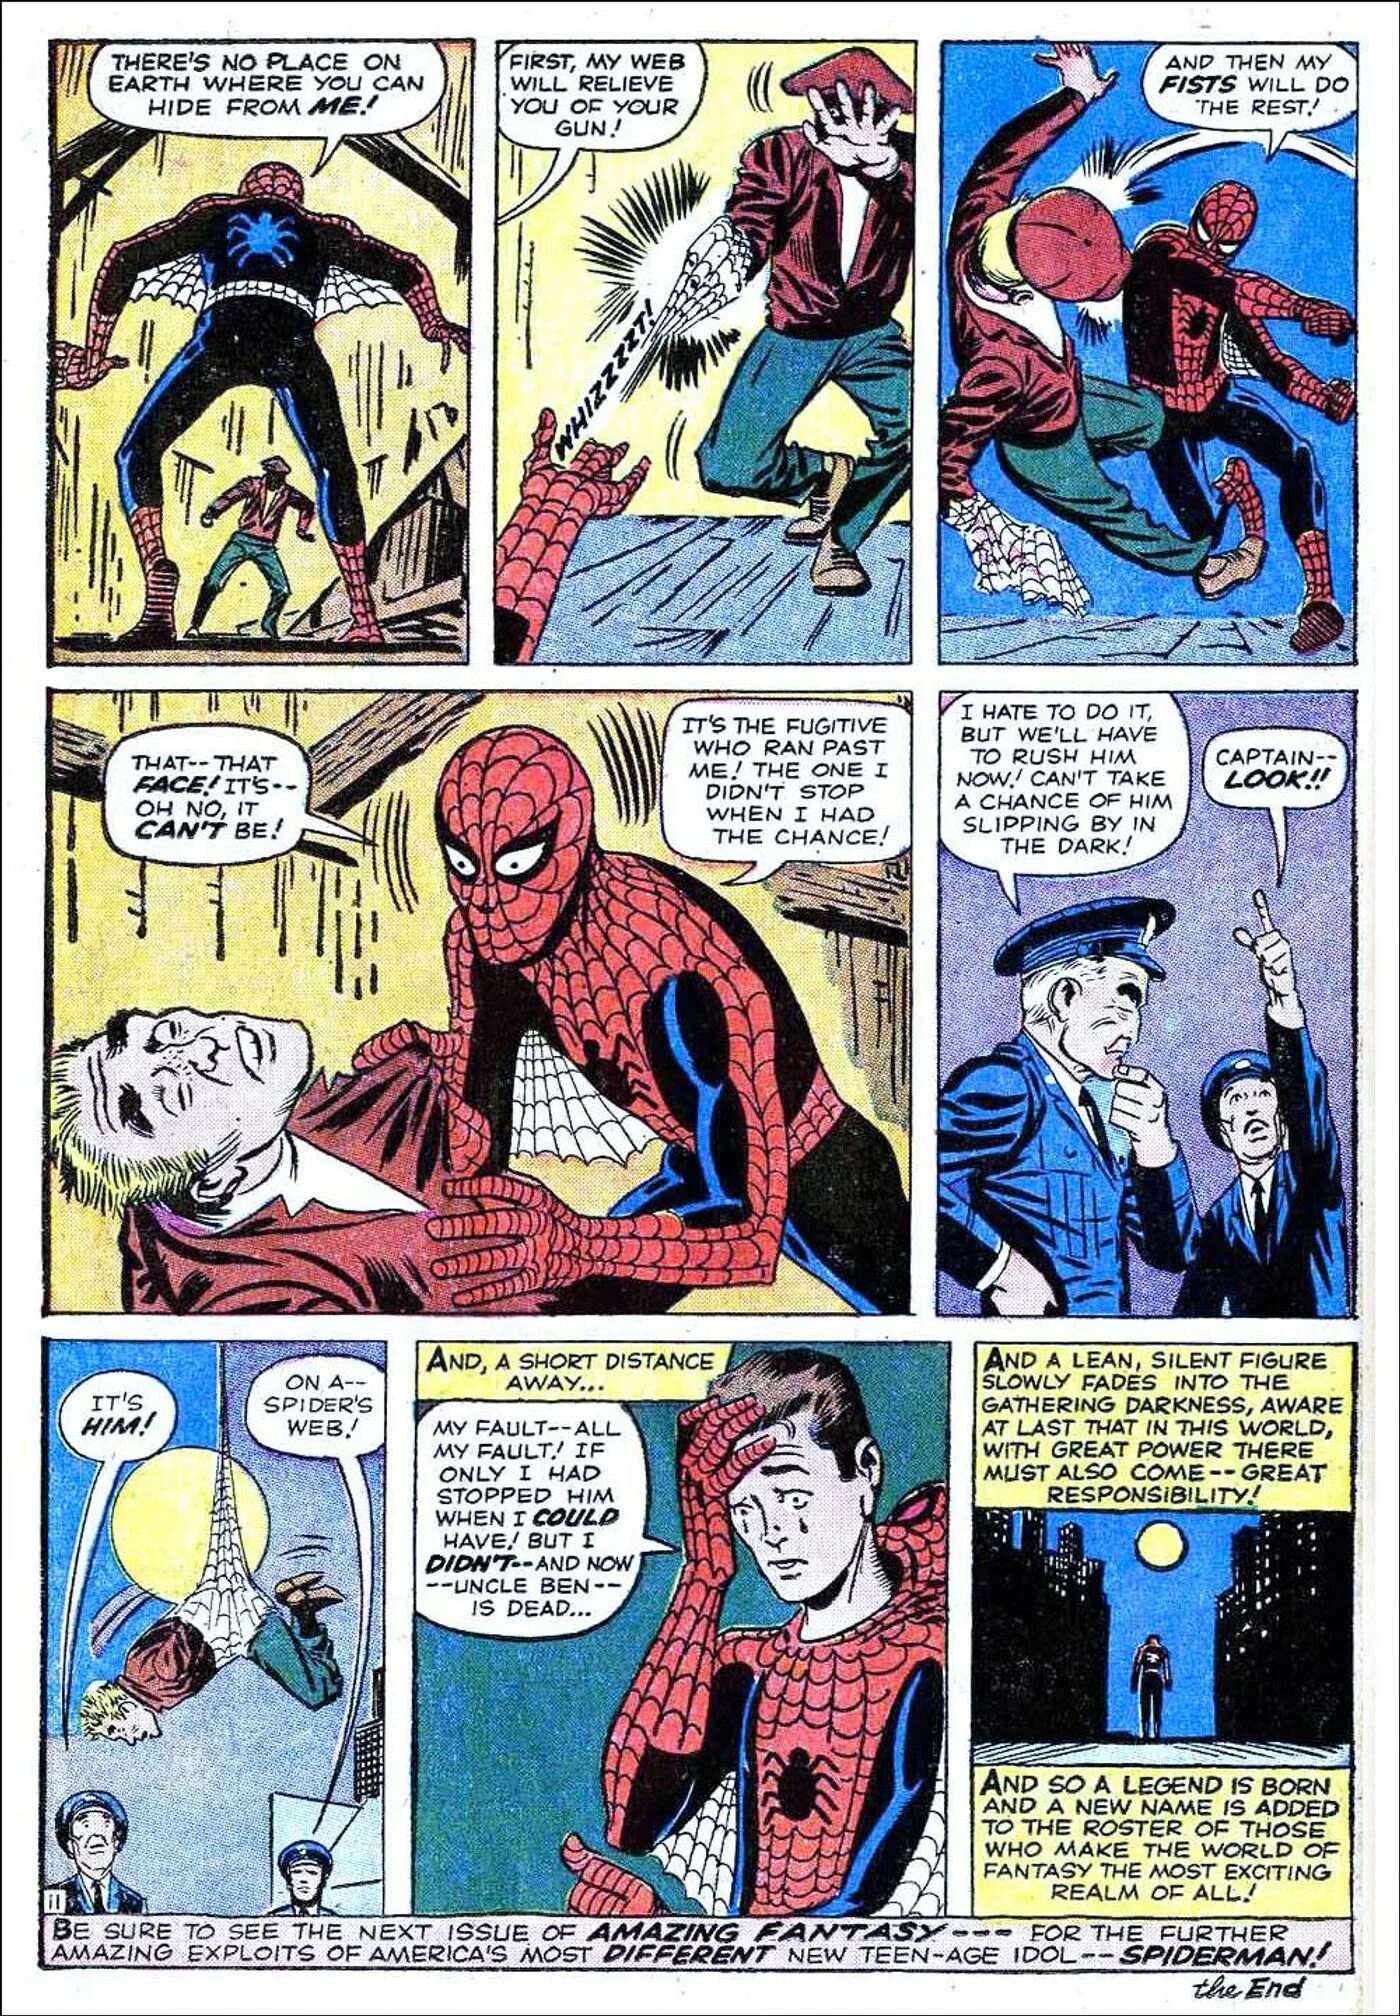 Удивительный человек рассказ. Первое появление человека паука в комиксах 1962. Amazing Spider man комикс 1 выпуск. Питер Паркер в комиксах 1960. Первый комикс про человека паука.